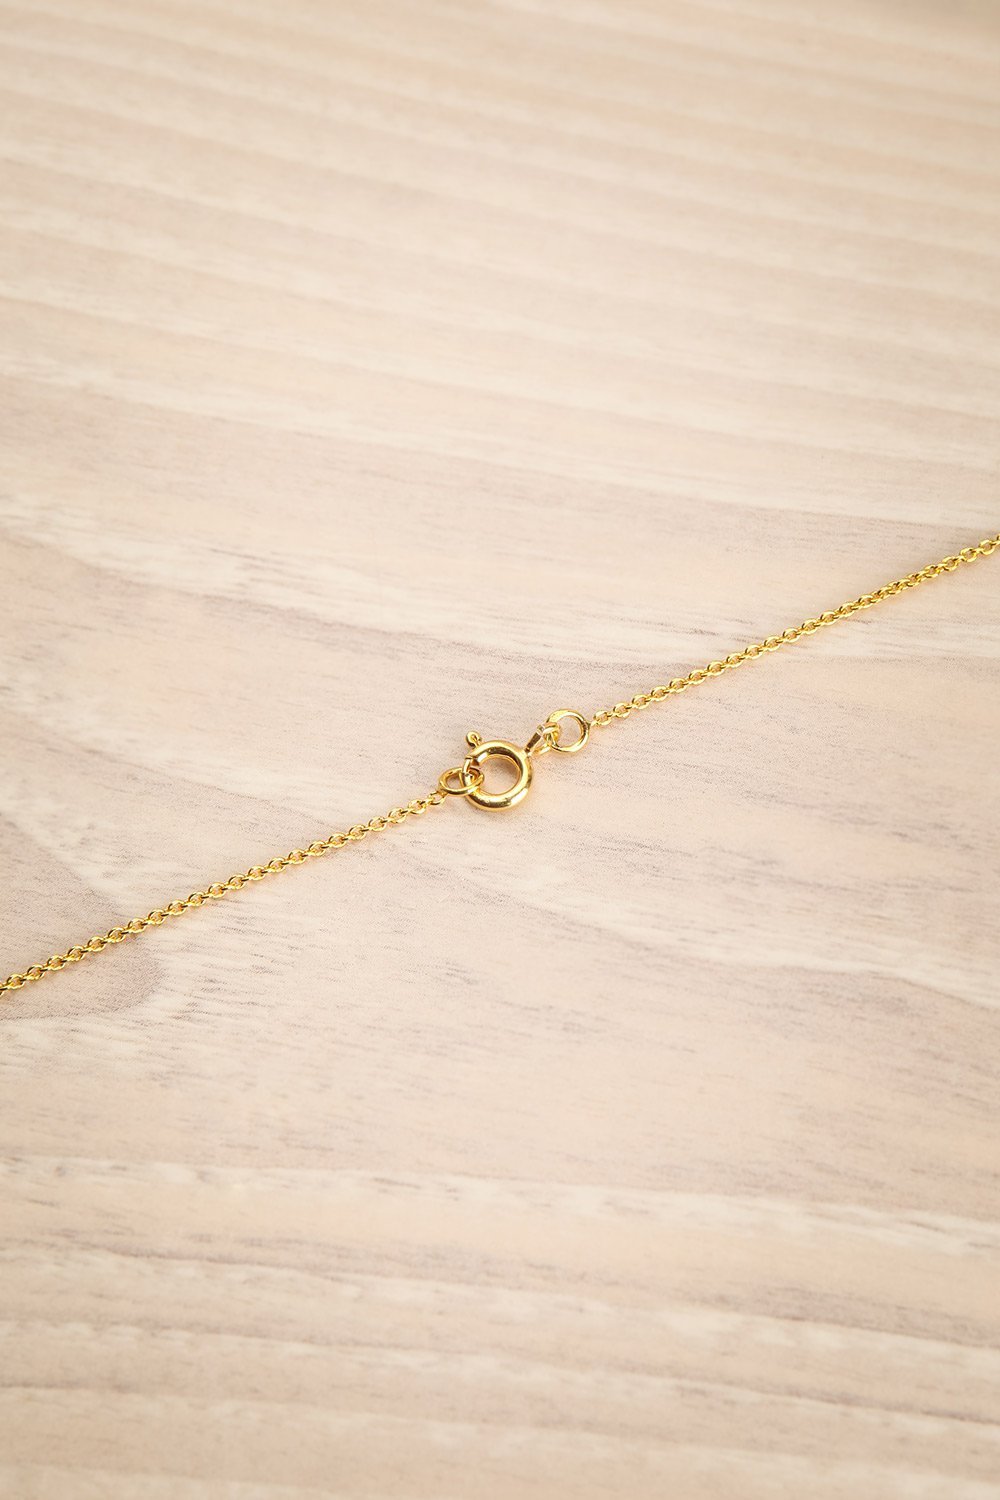 Mustus Gold Heart-Shaped Pendant Necklace | La Petite Garçonne Chpt. 2